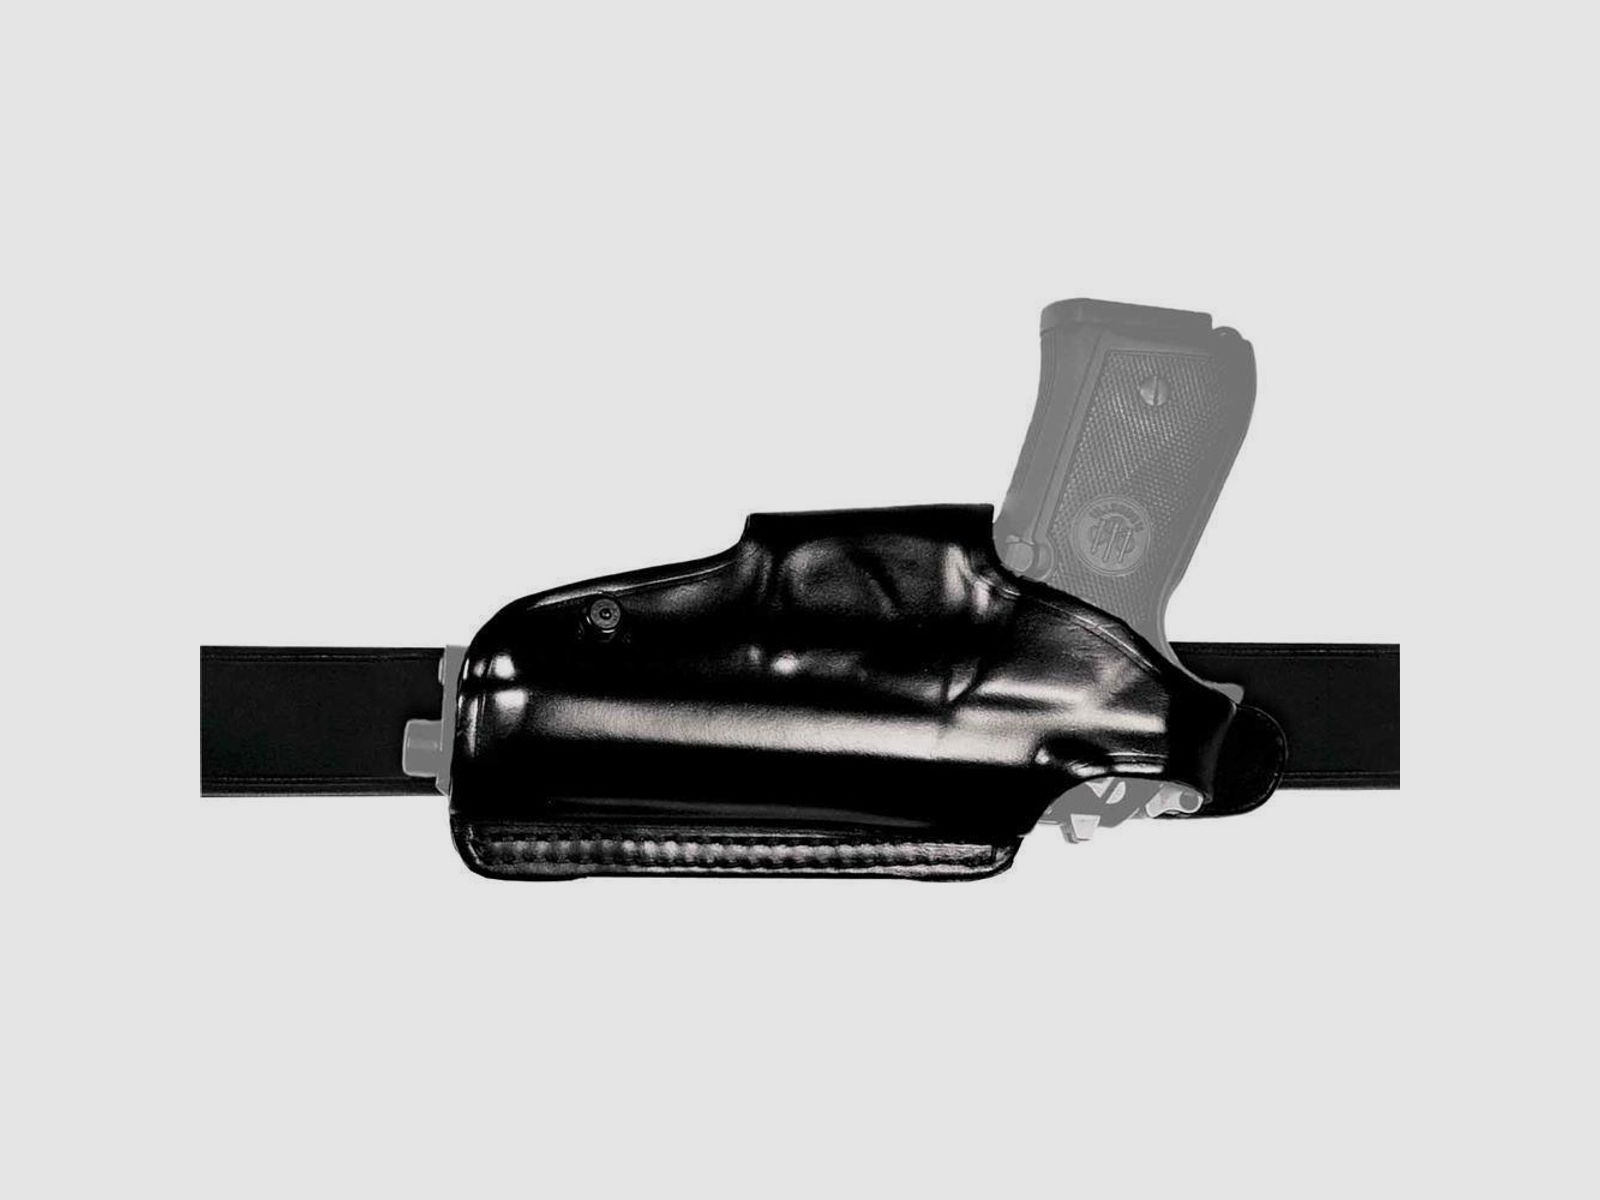 Mehrzweck-Schulterholster/Gürtelholster "Miami 2" Glock 43/43X Braun Rechtshänder